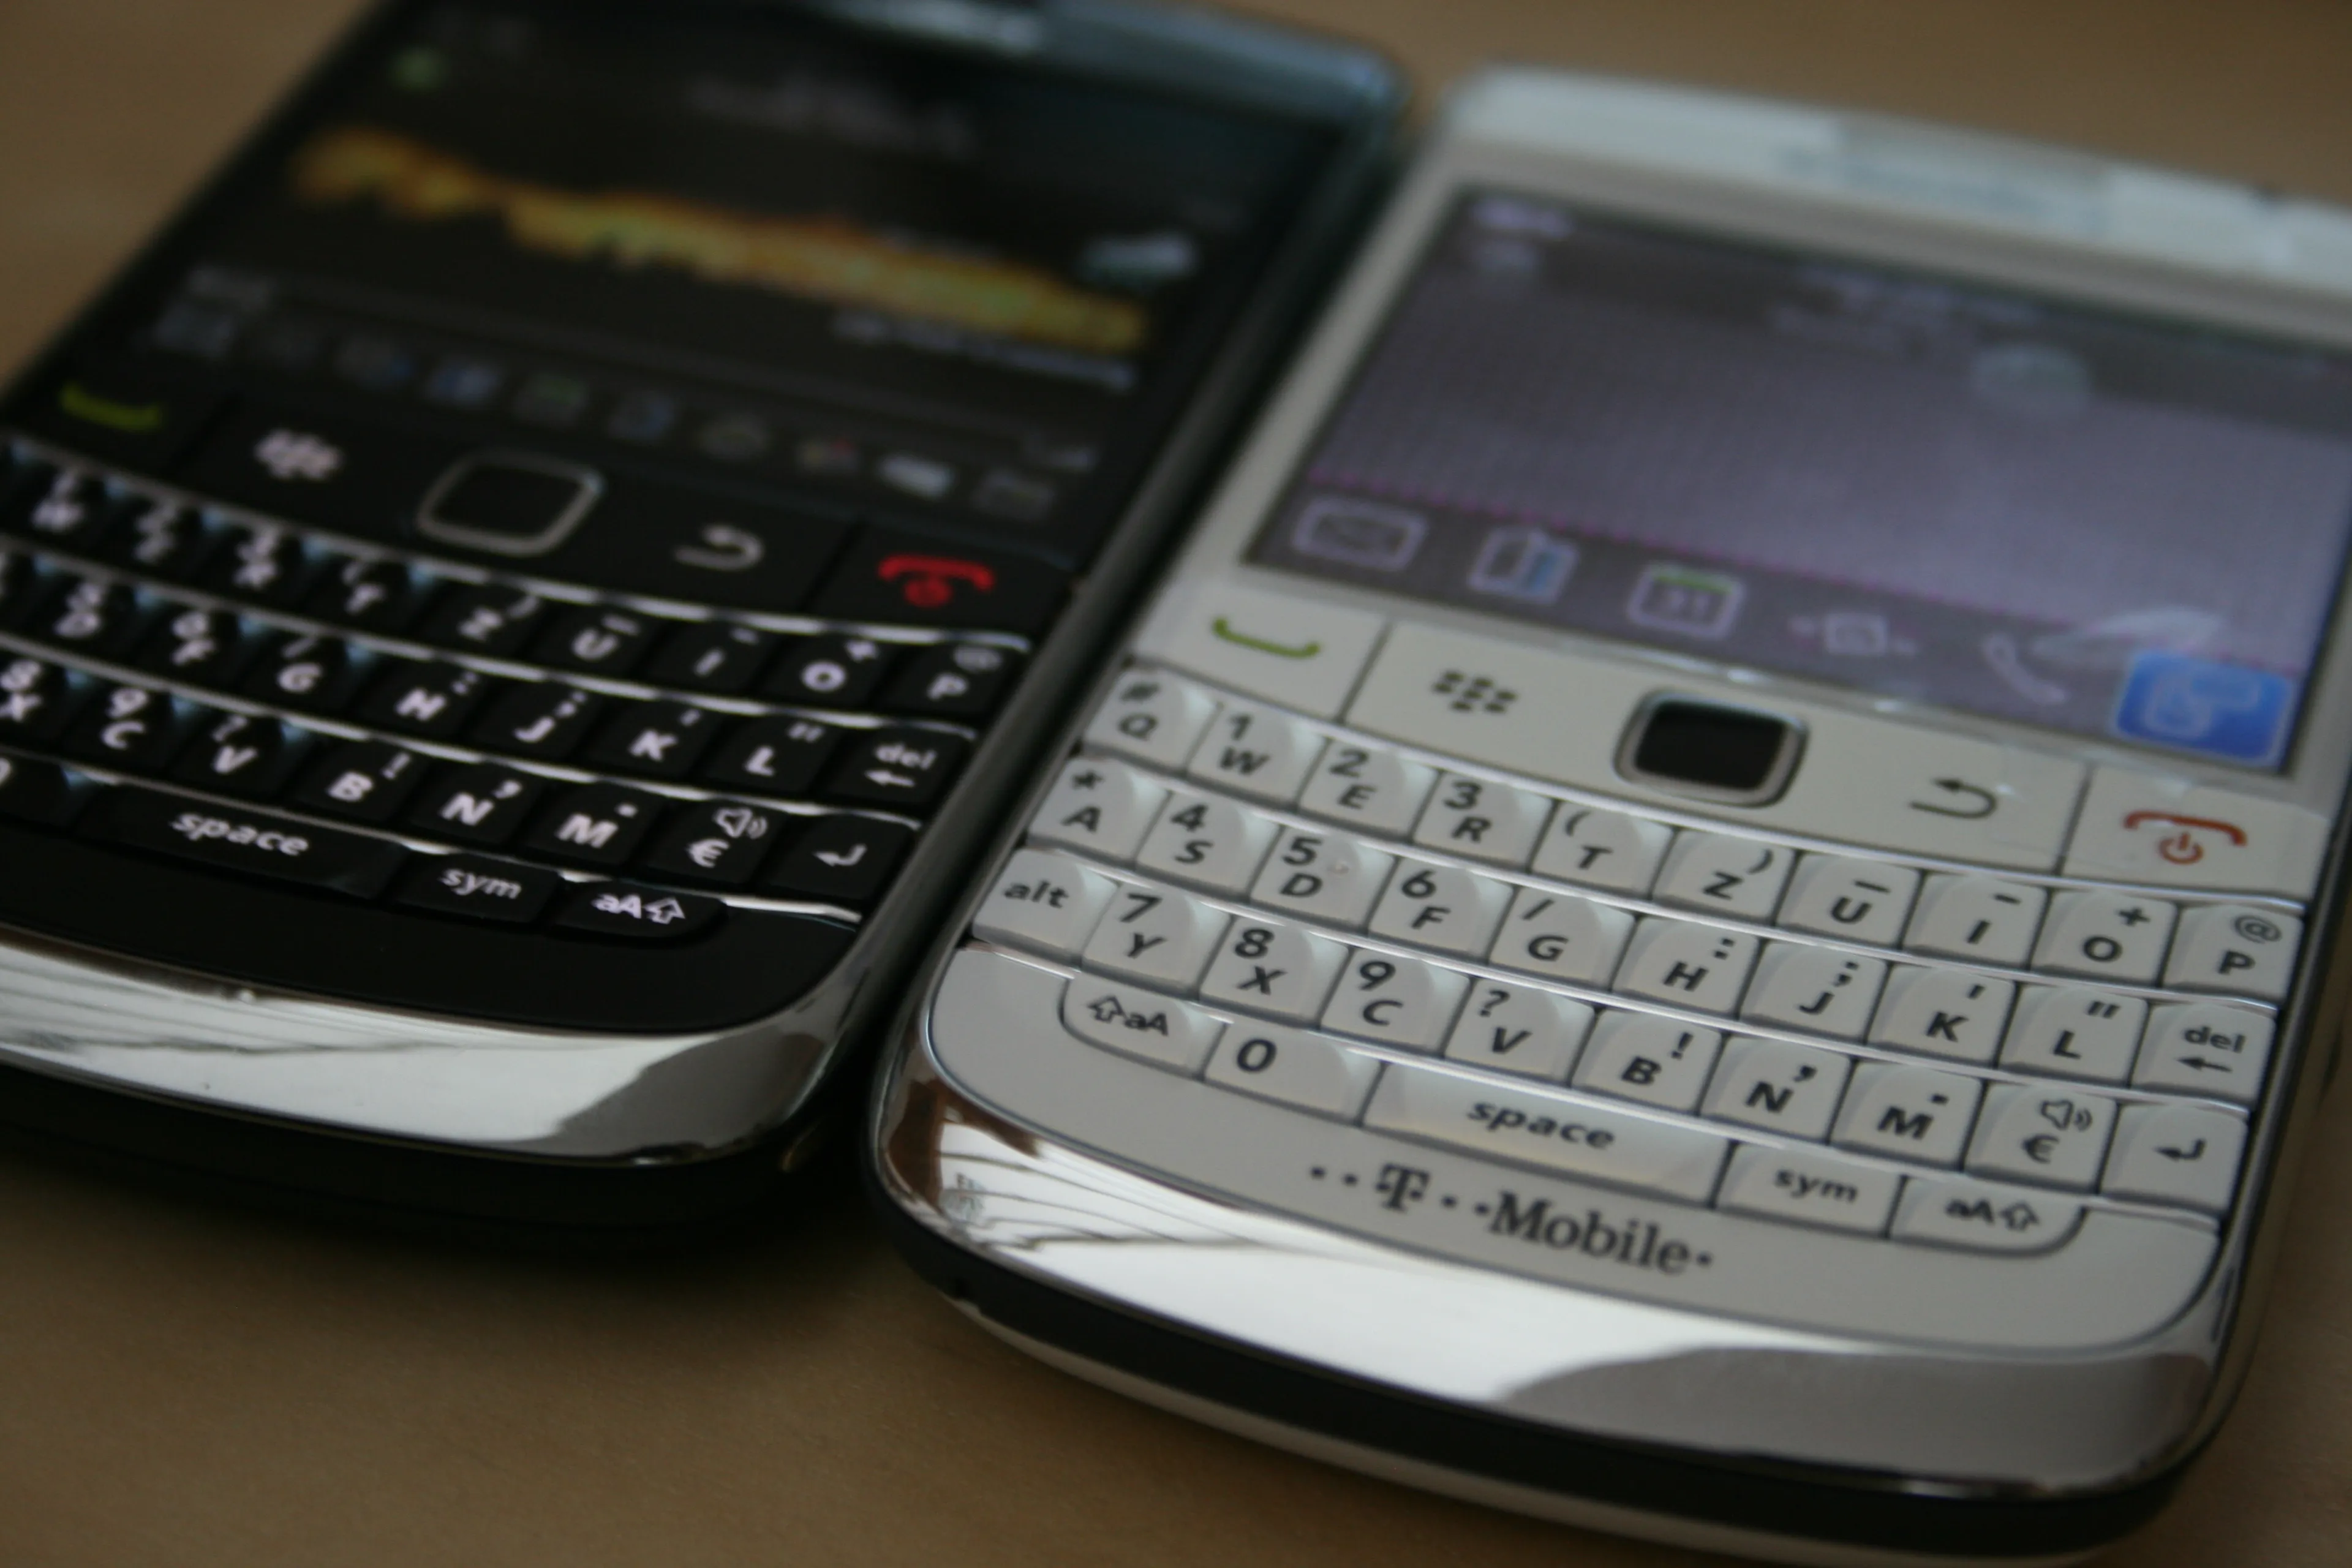 blackberry 9700 white and black